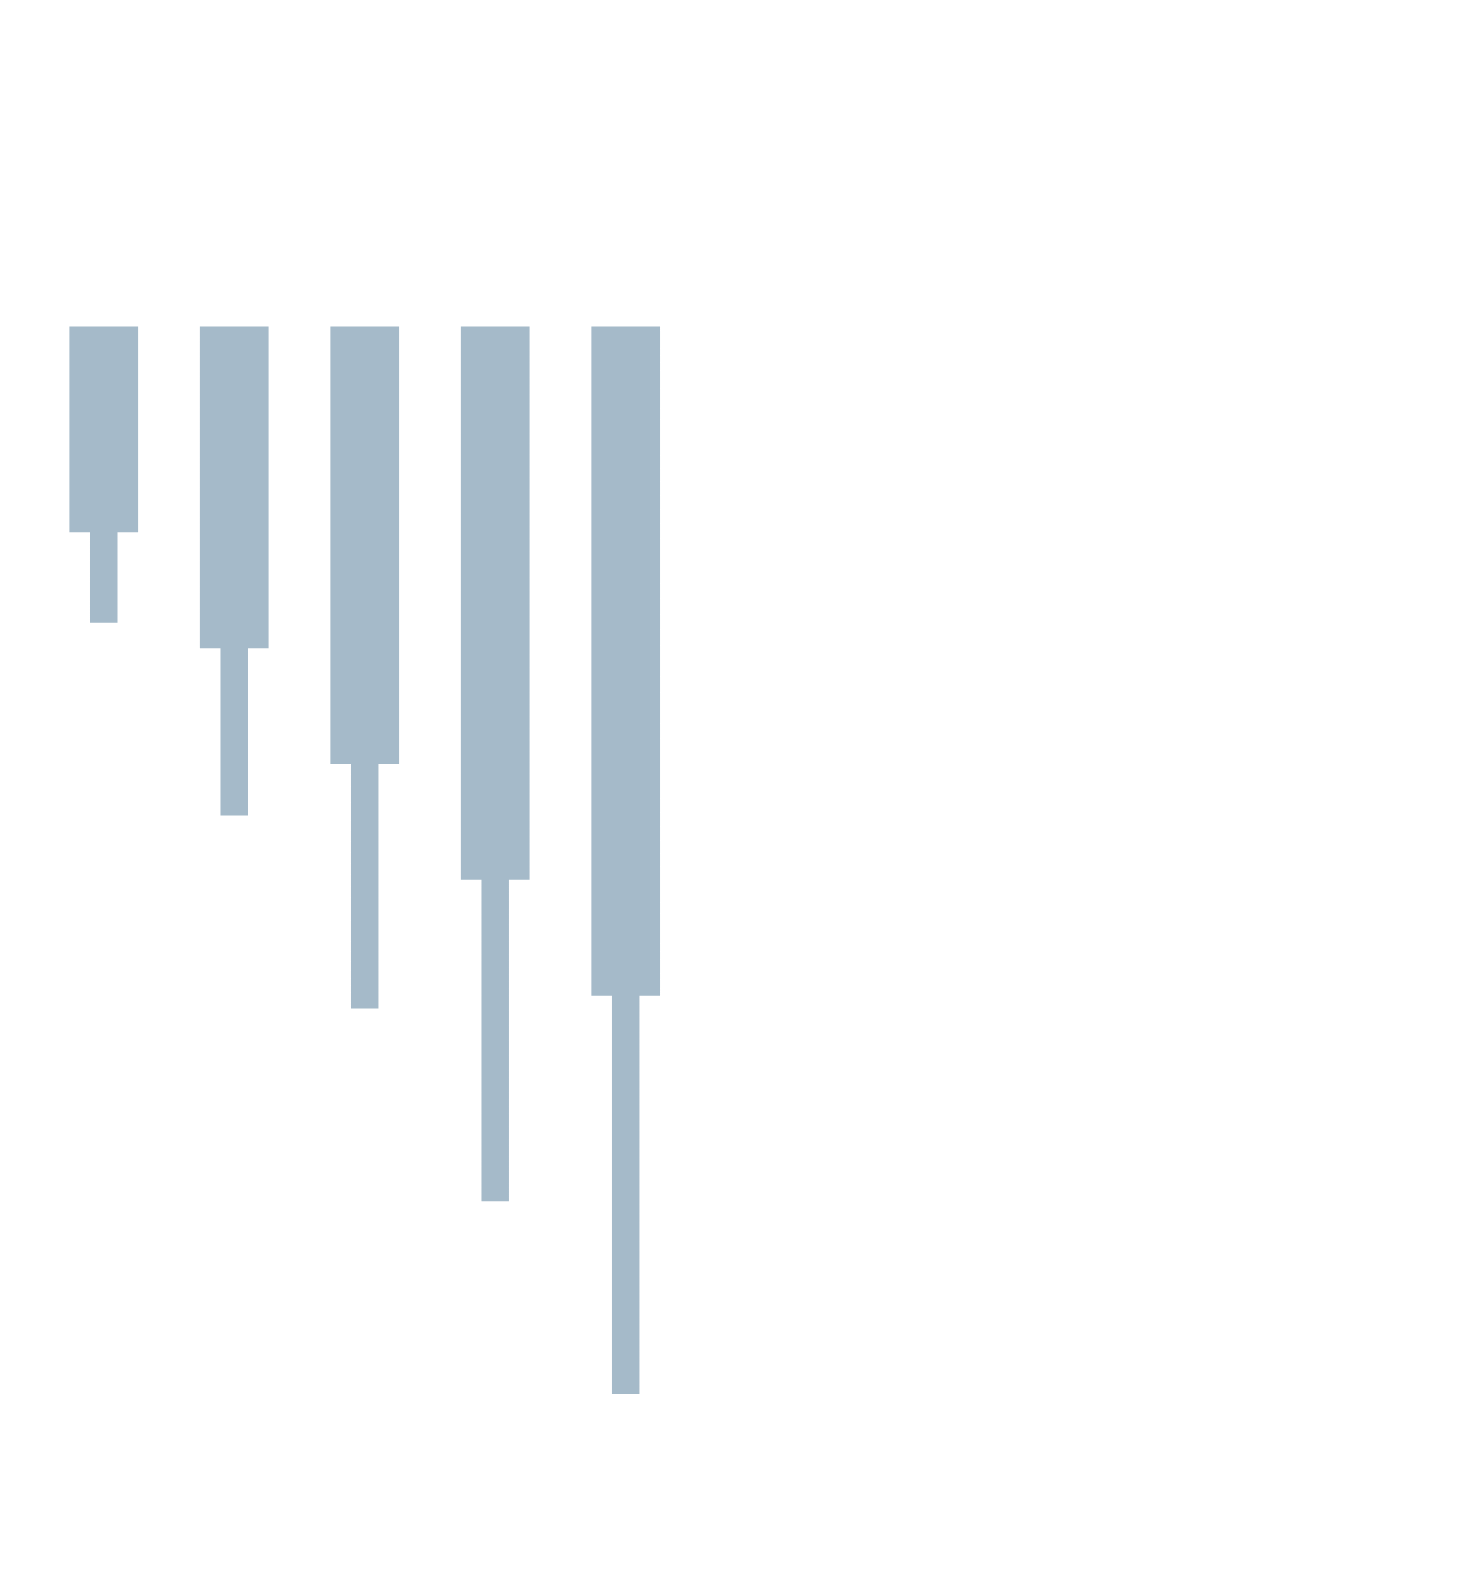 Valaris logo grand pour les fonds sombres (PNG transparent)